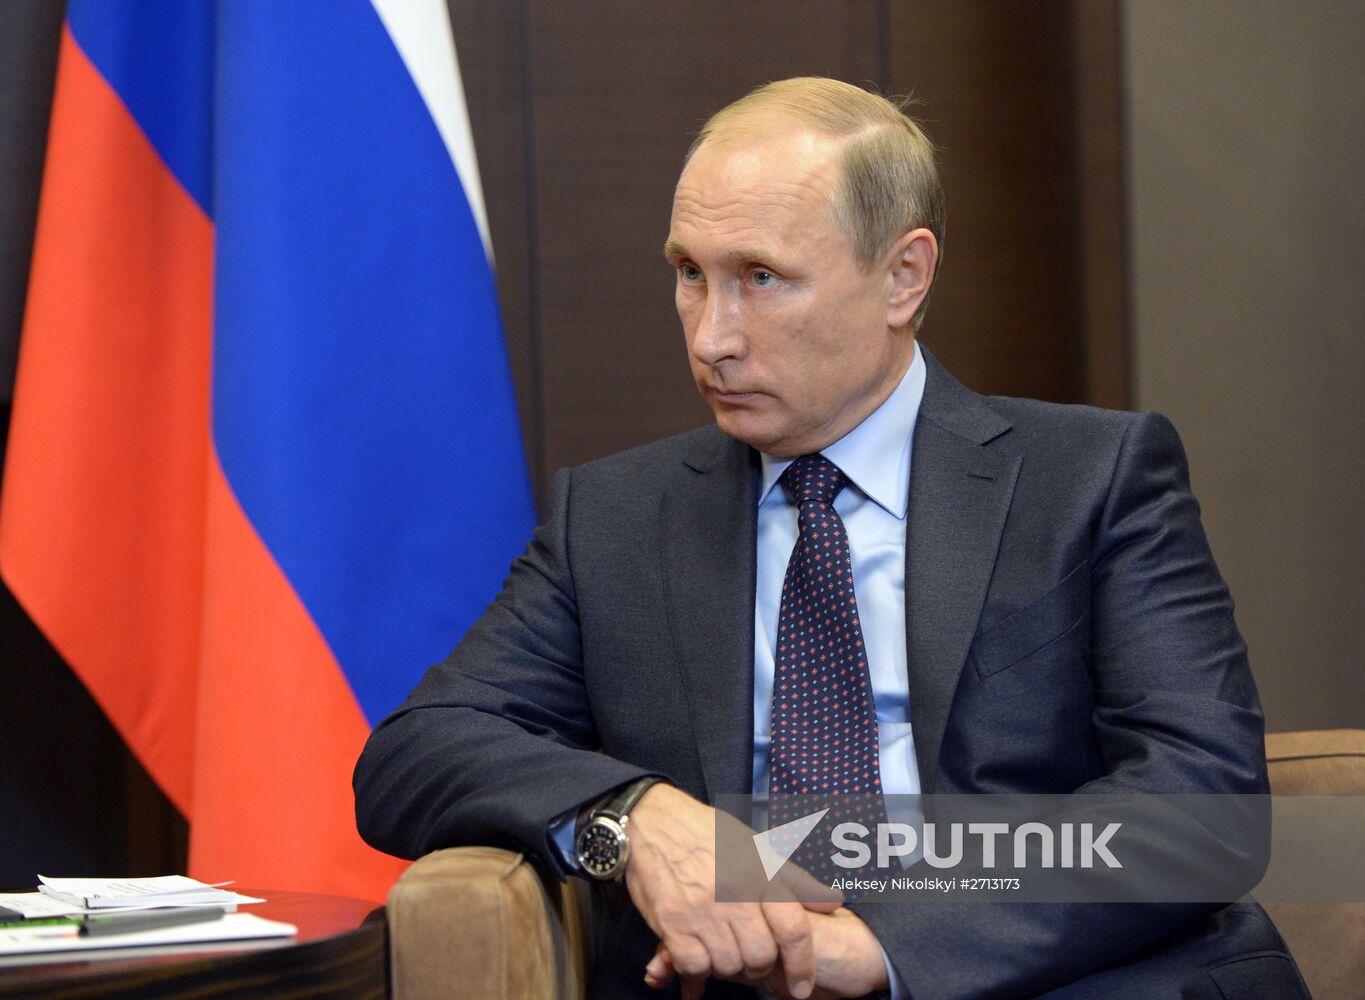 President Vladimir Putin's working meeting with Tajik President Emomali Rahmon